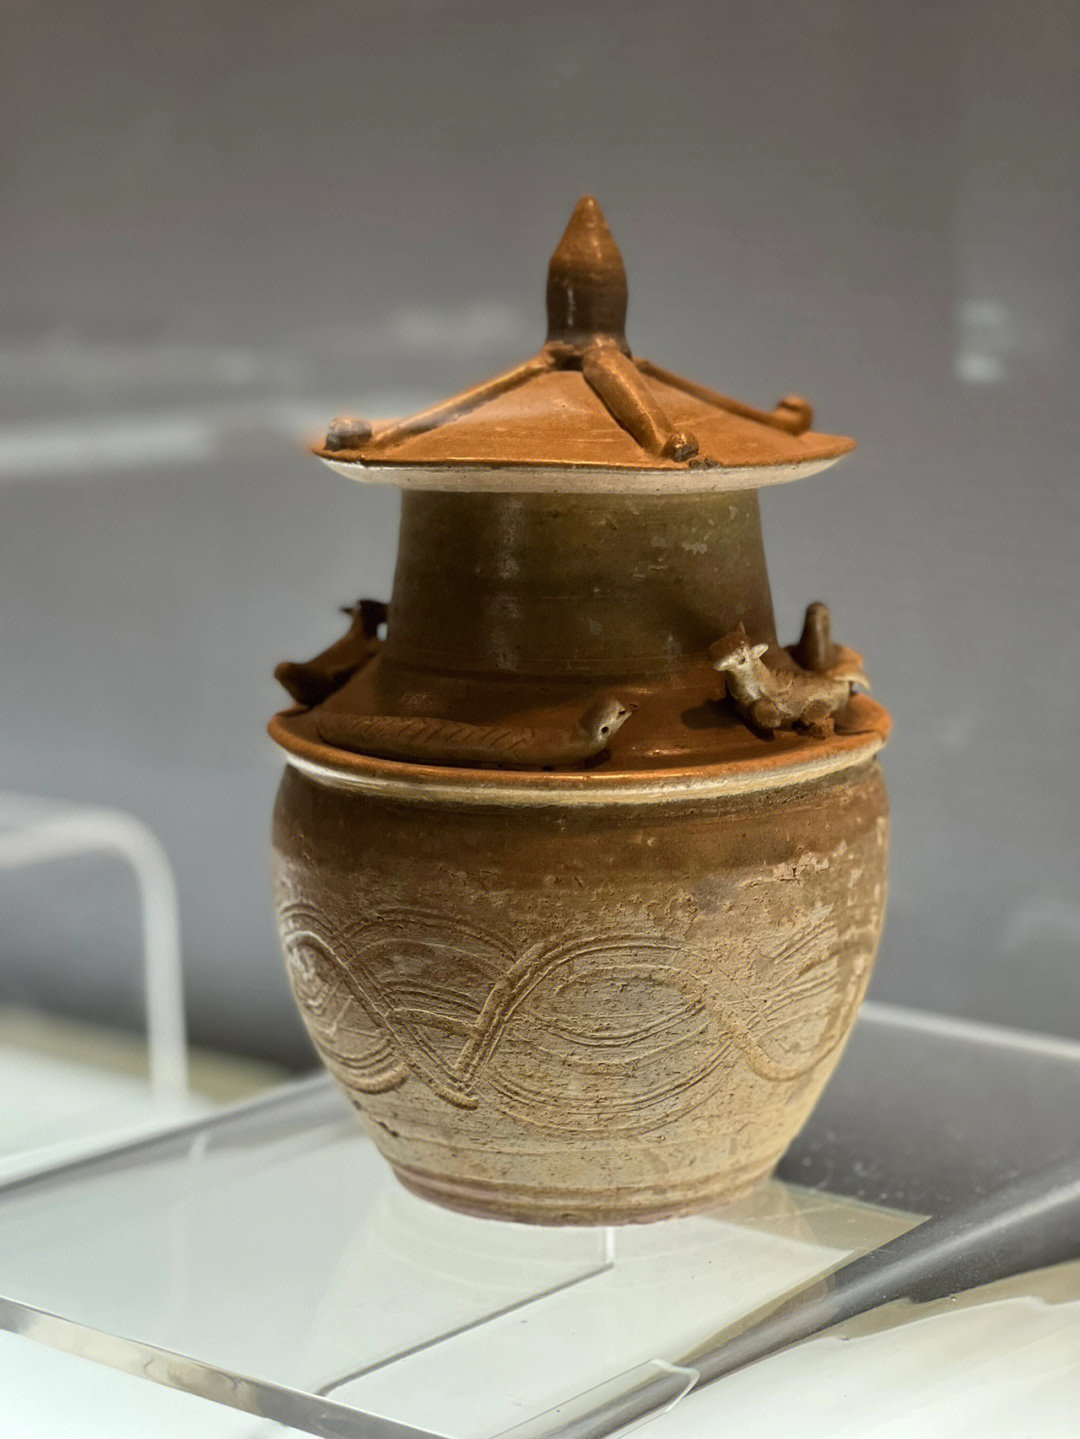 碗窑村衢州陶瓷博物馆图片